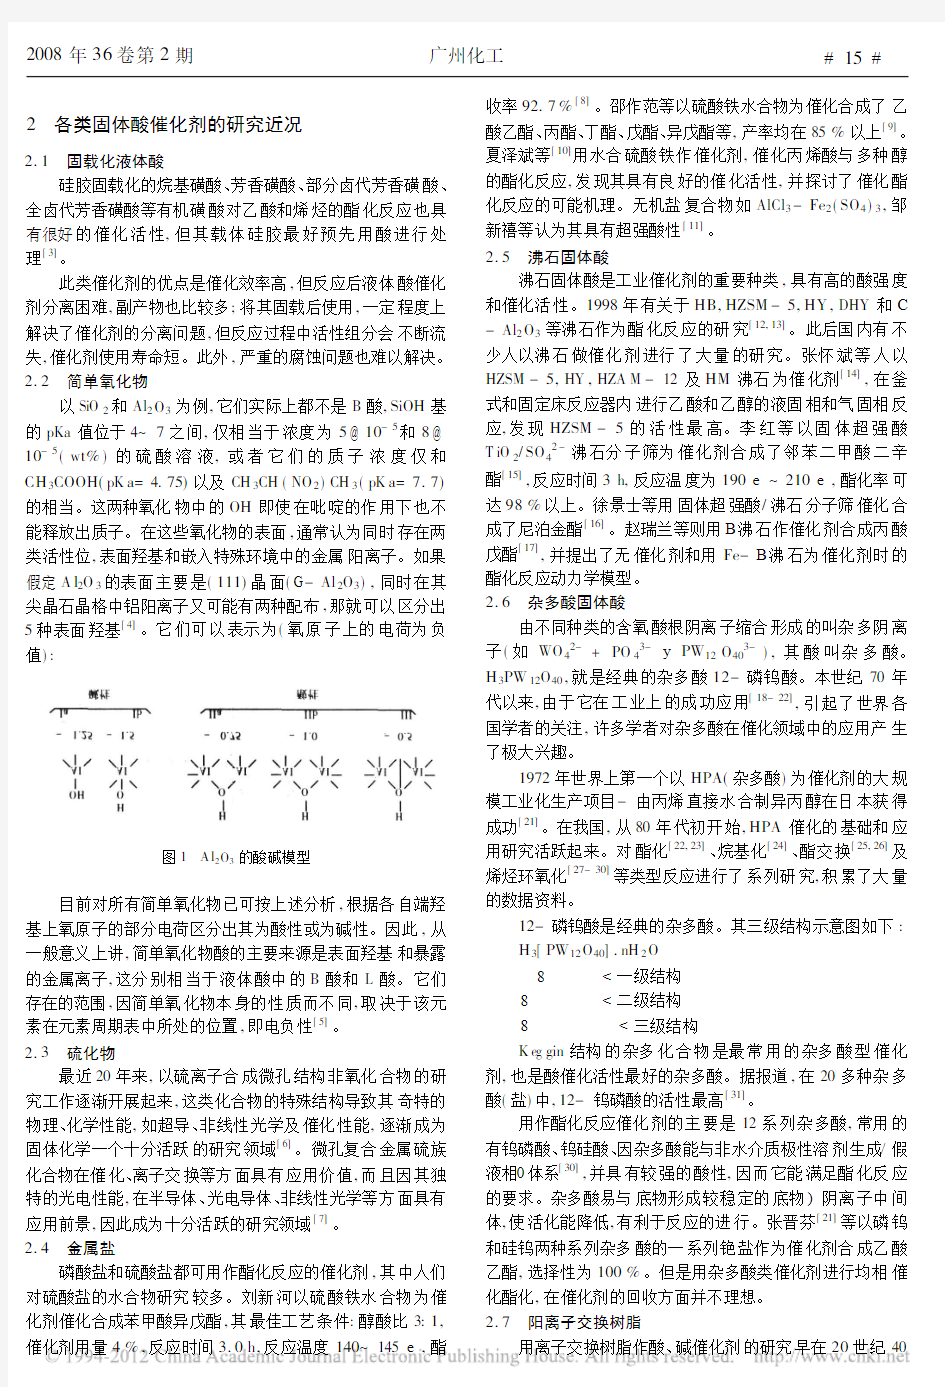 固体酸催化剂的分类以及研究近况_刘庆辉